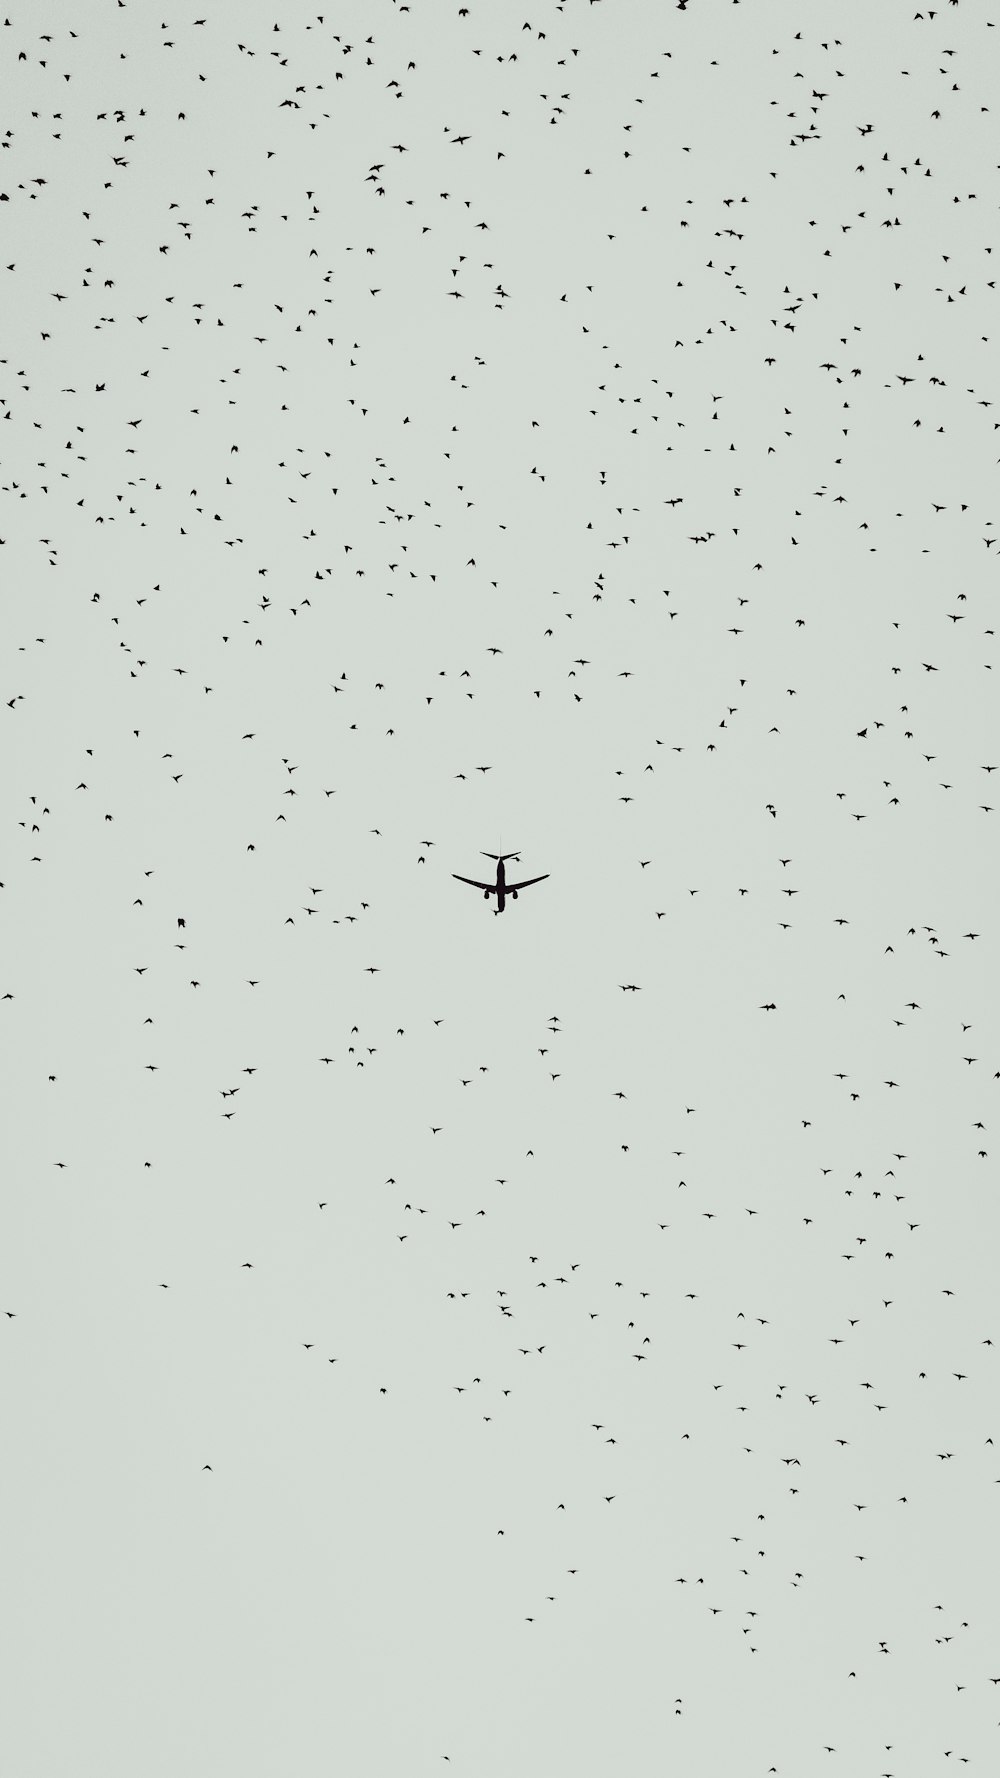 Fliegendes Verkehrsflugzeug am Himmel